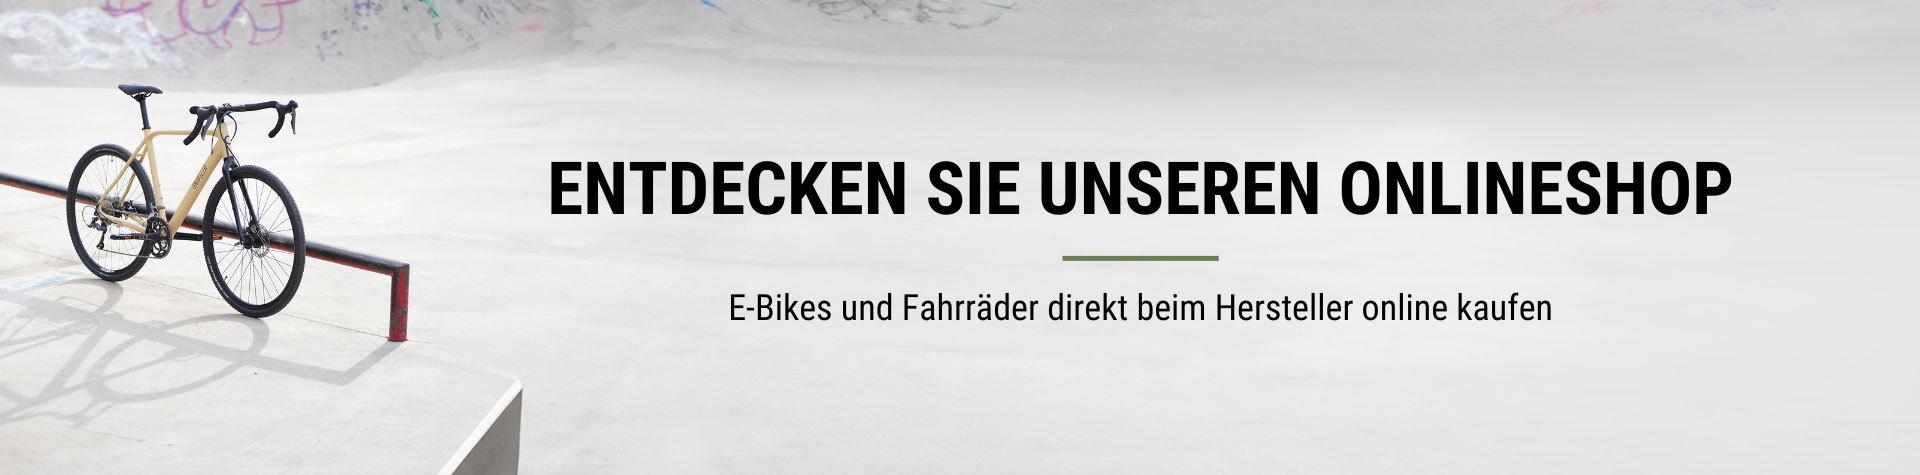 Prophete Onlineshop für Fahrräder und E-Bikes